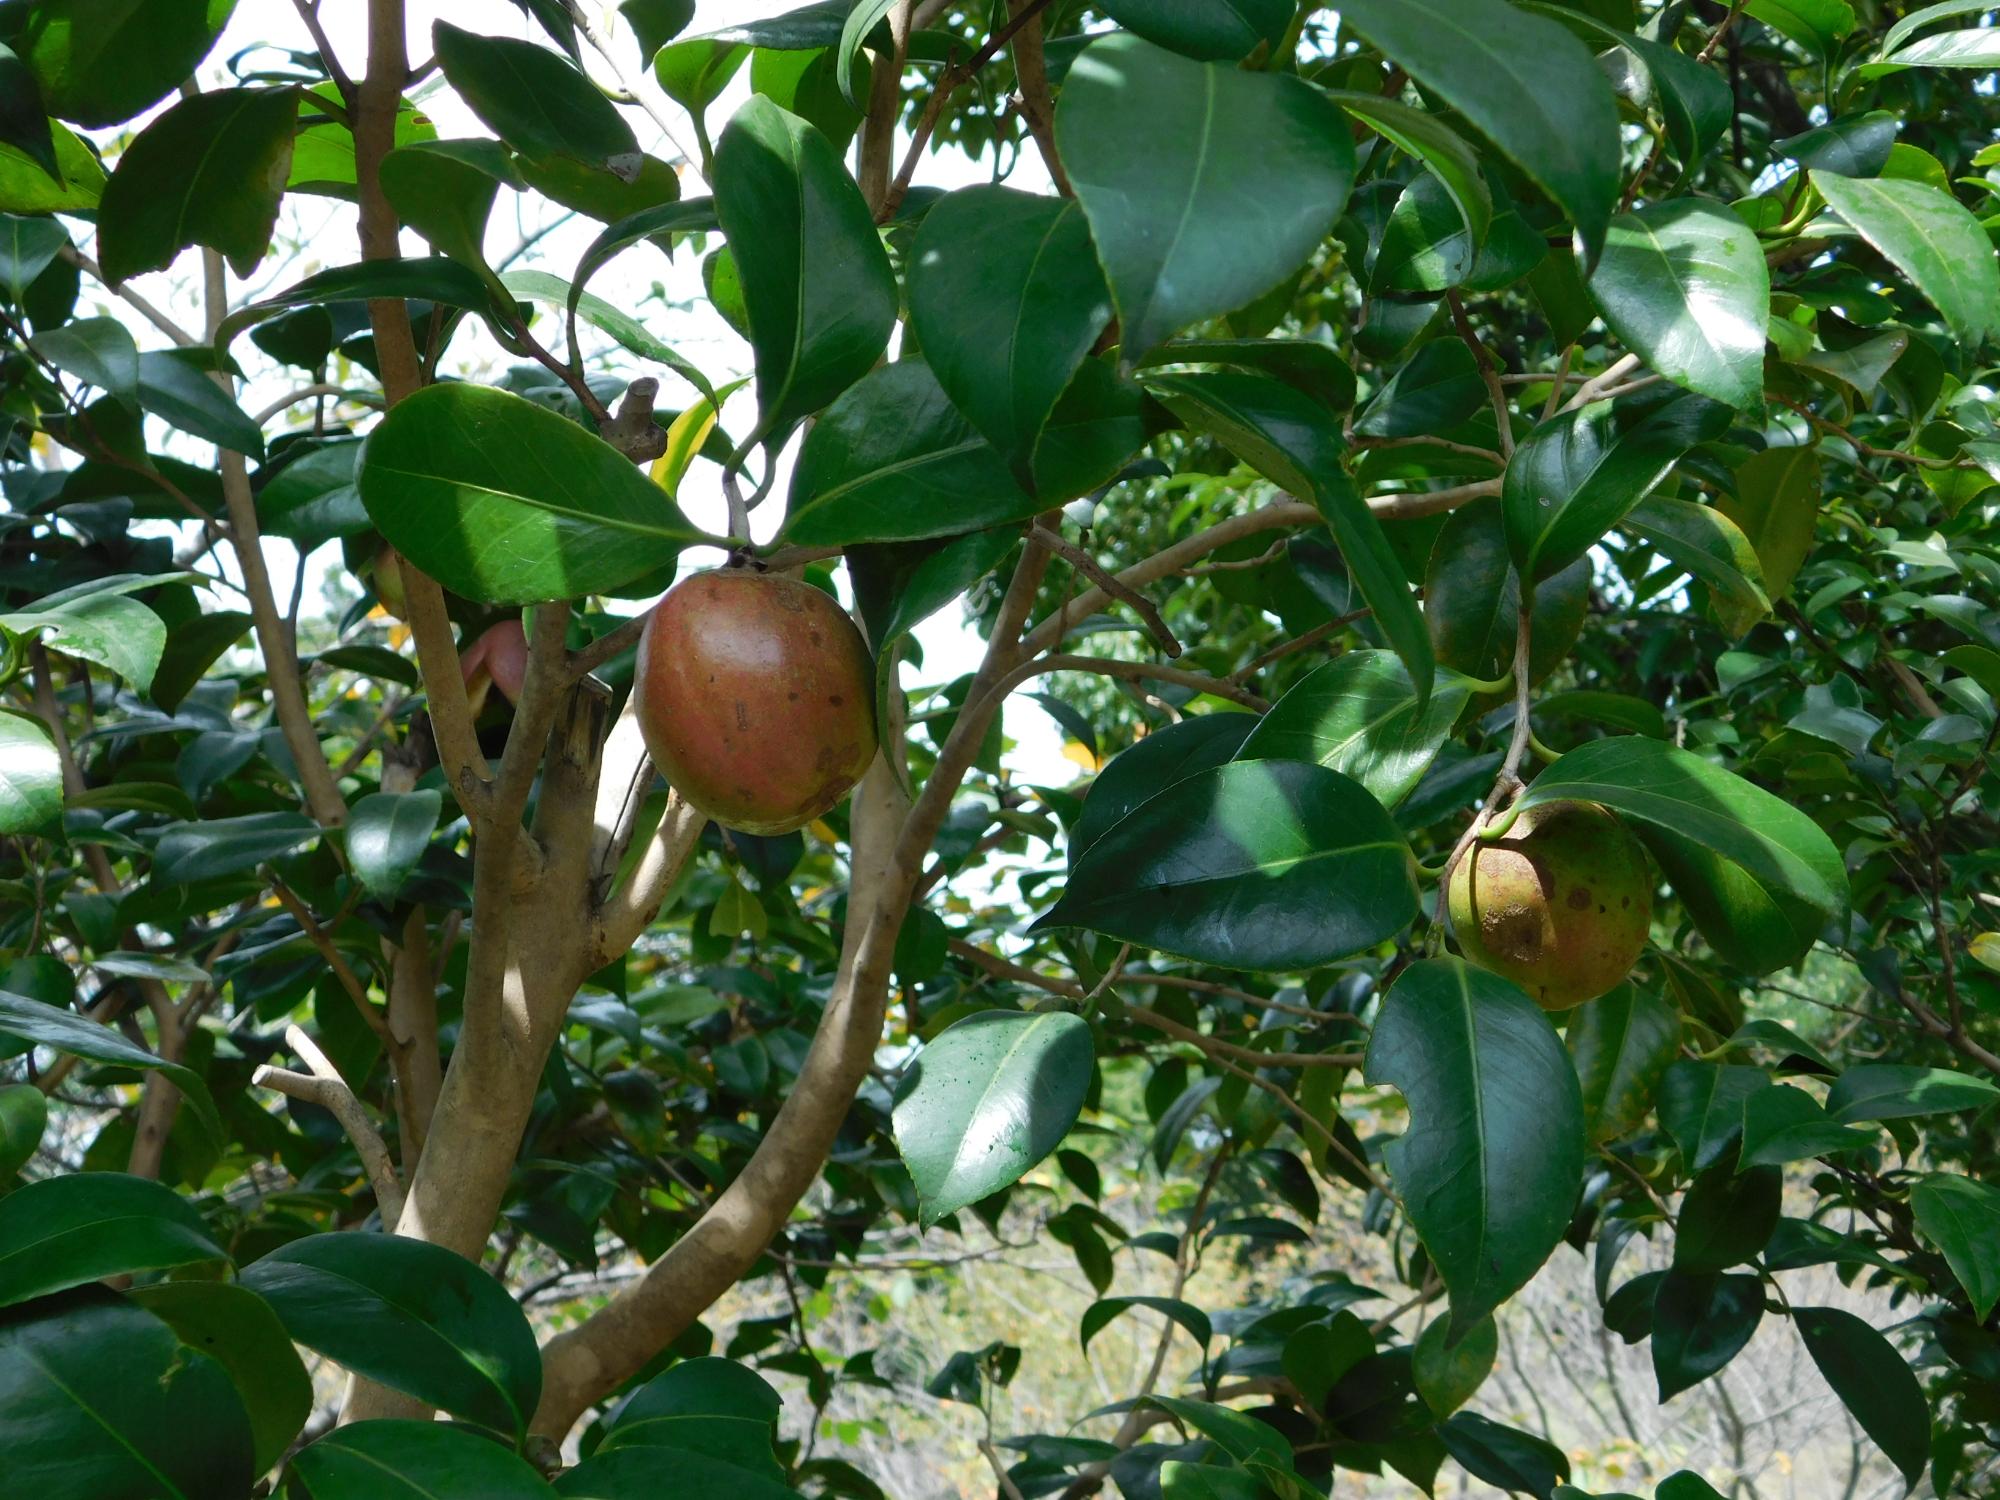 薬草園のヤブツバキの実です。直径が5cm程あります。ツバキ油は、この果実から取れることで知られています。